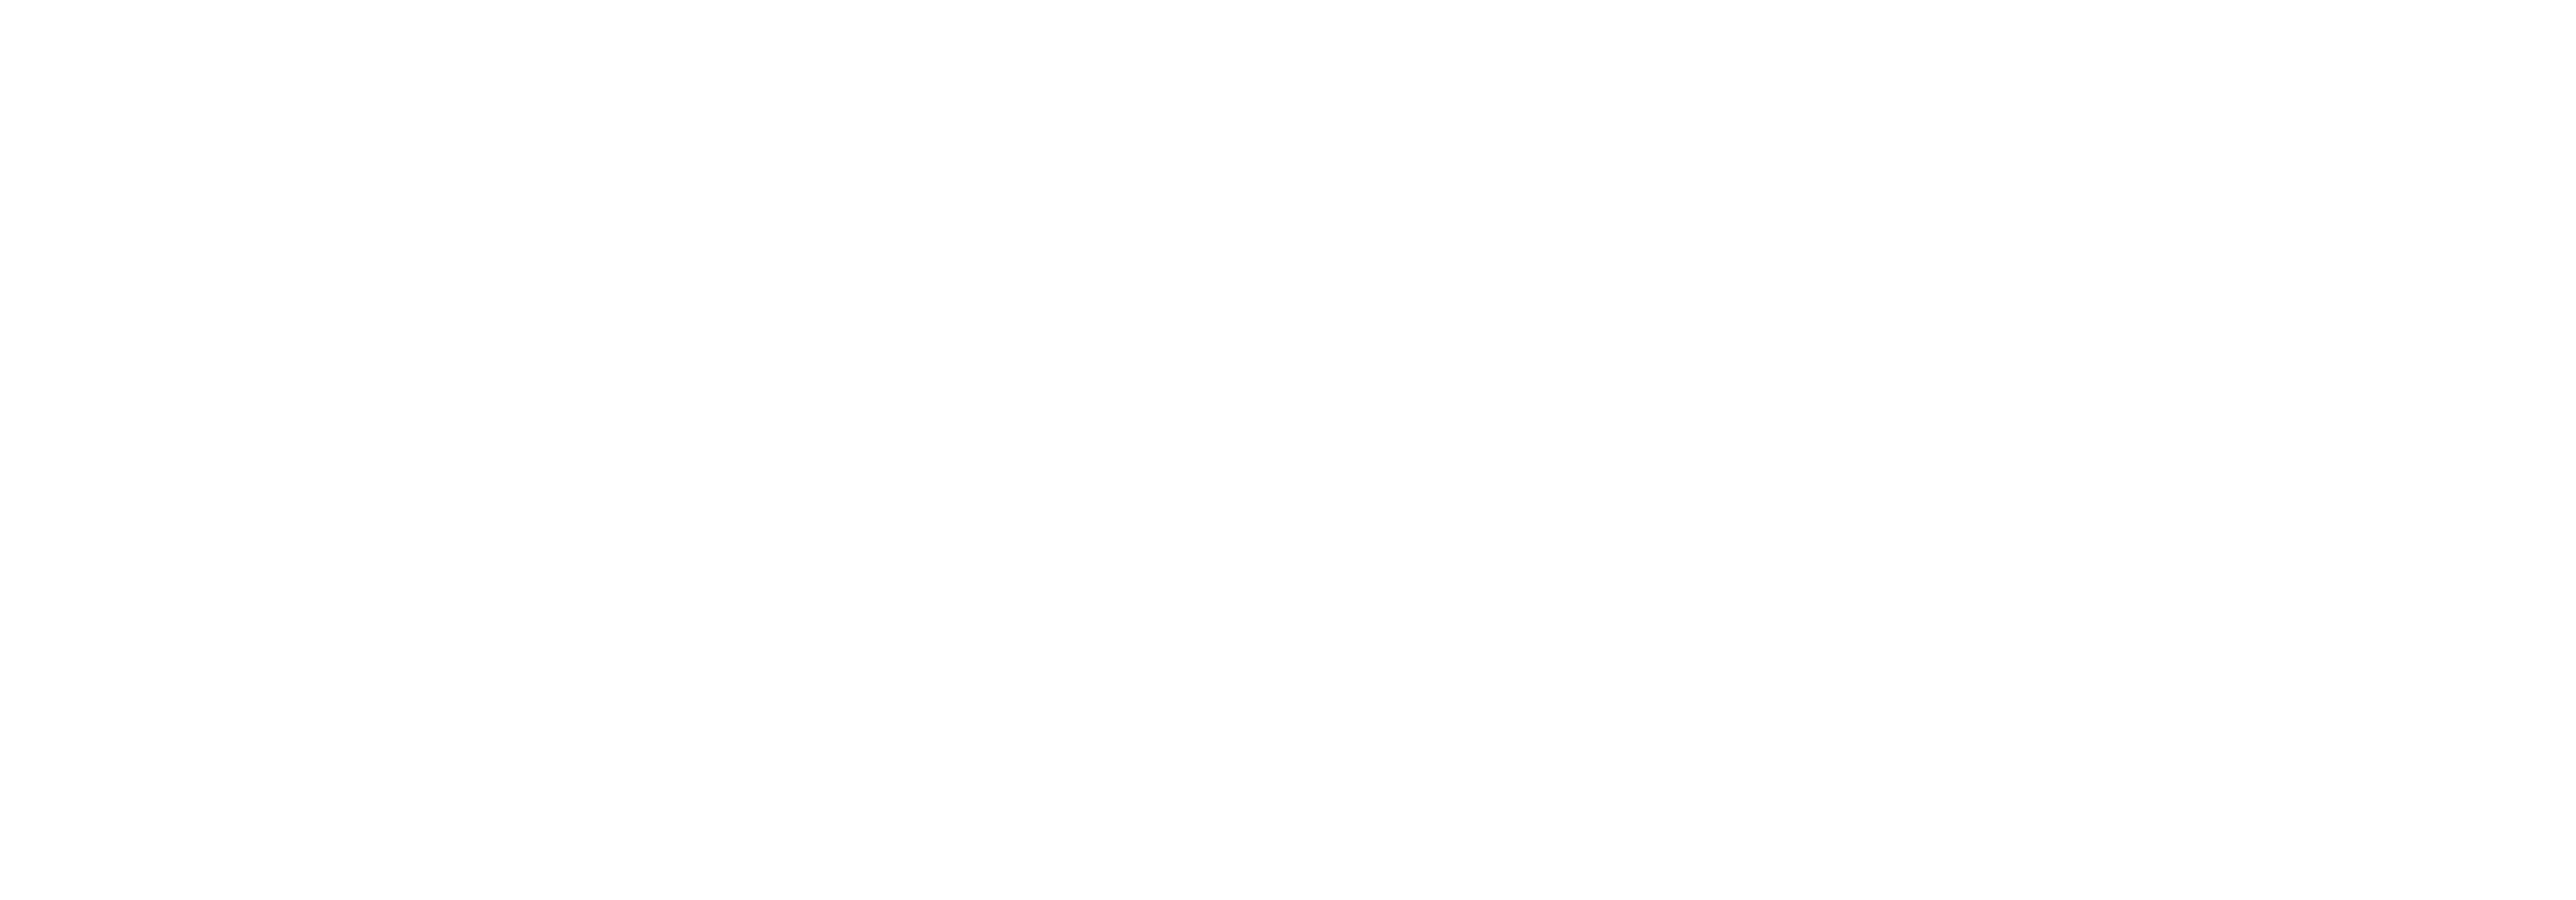 Solsafe